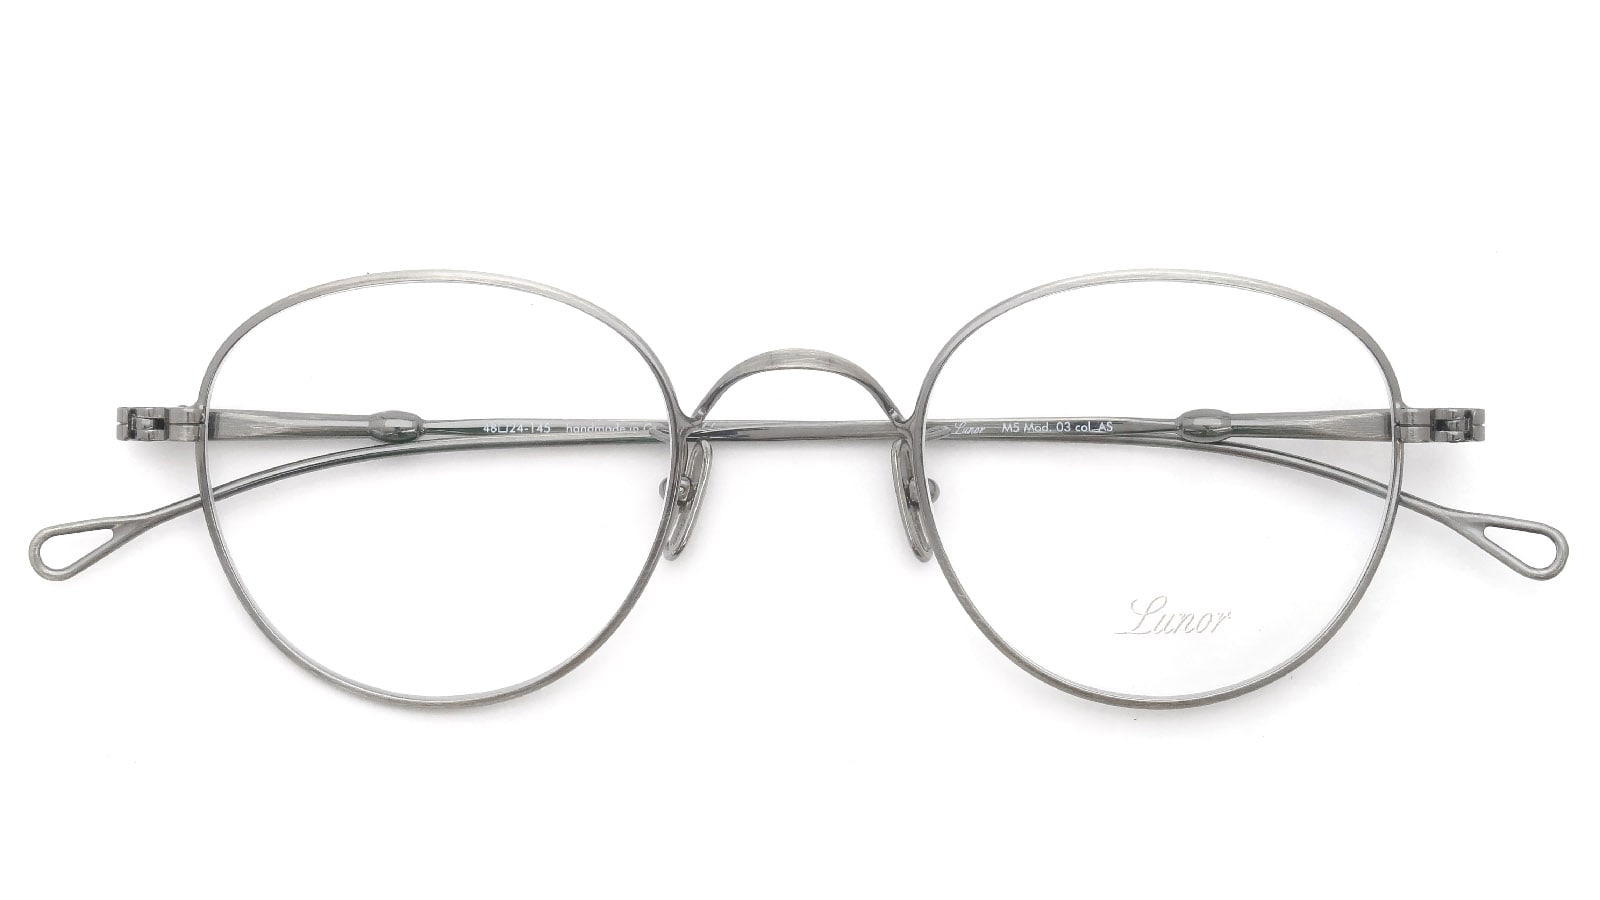 ルノア LUNOR M5 mod.02 眼鏡 メガネ アイウェア エムファイブ メタル